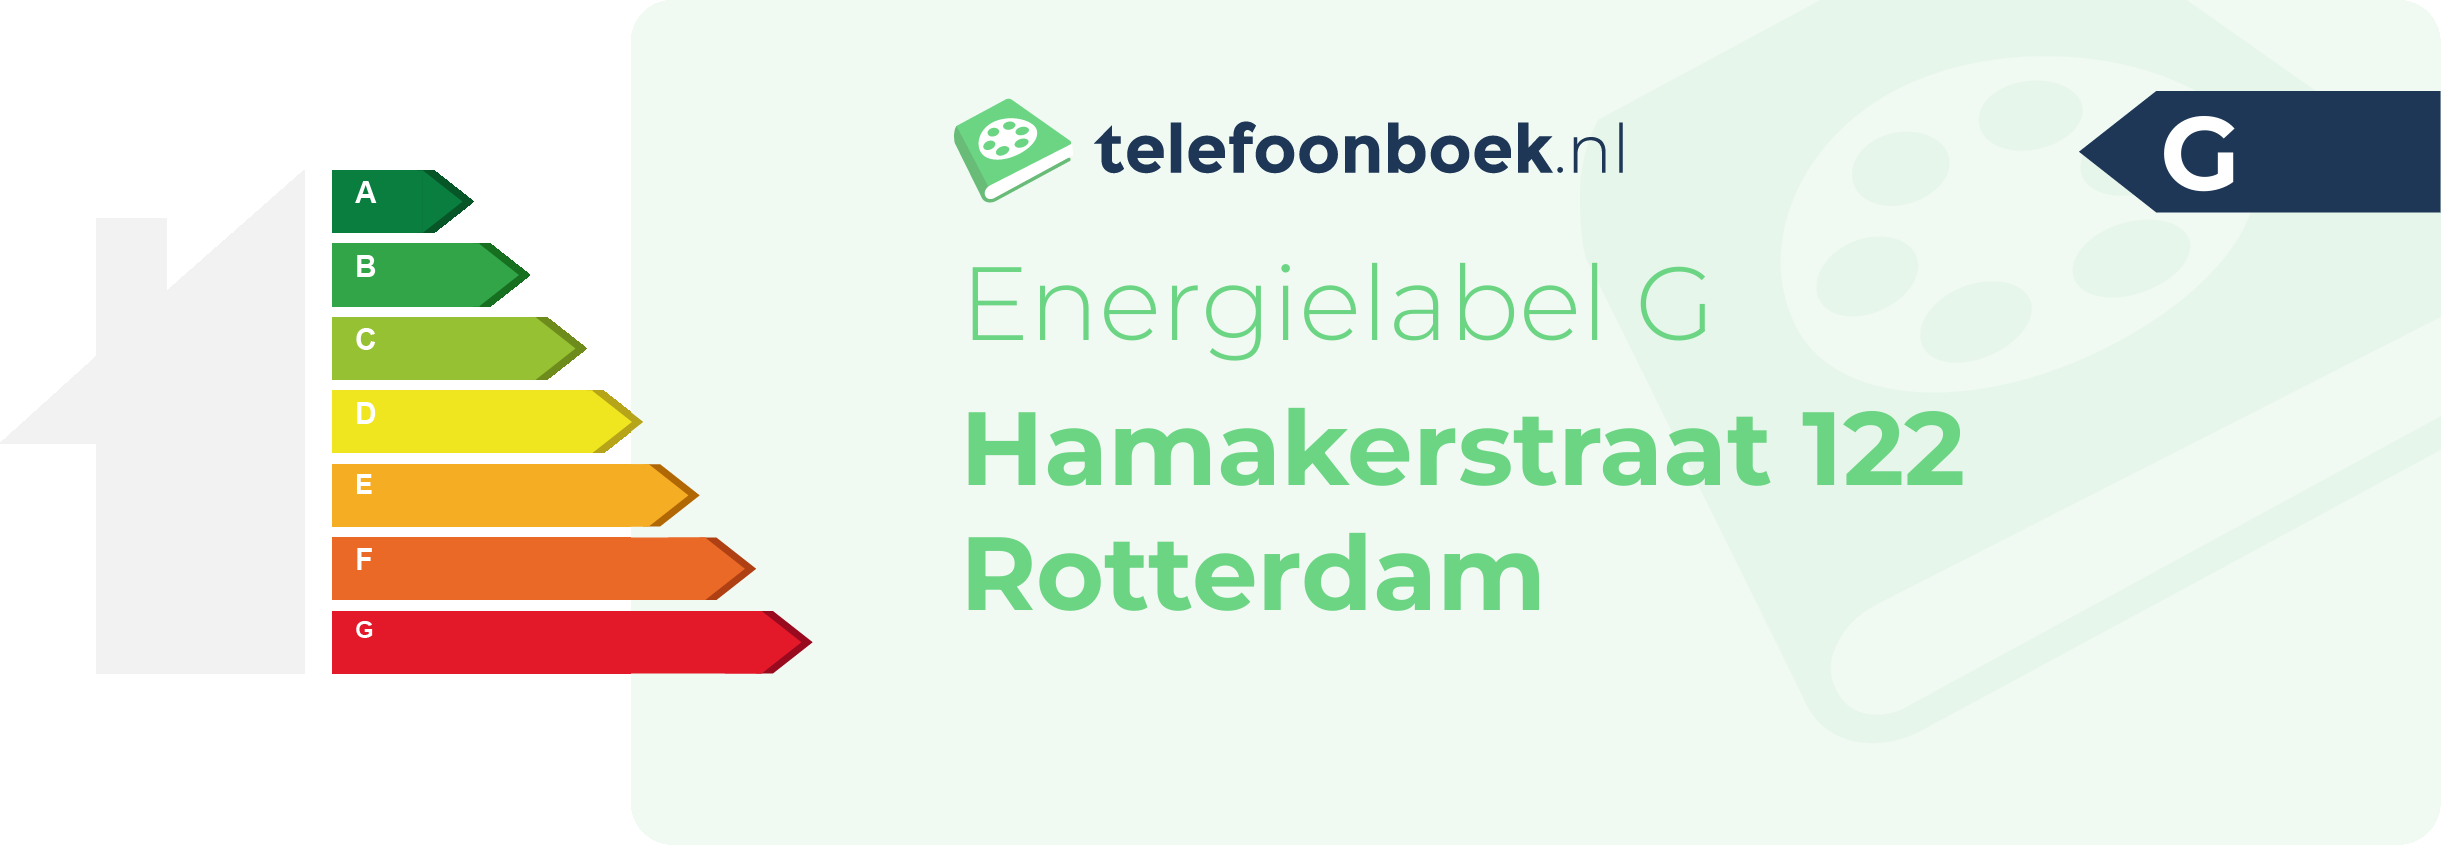 Energielabel Hamakerstraat 122 Rotterdam